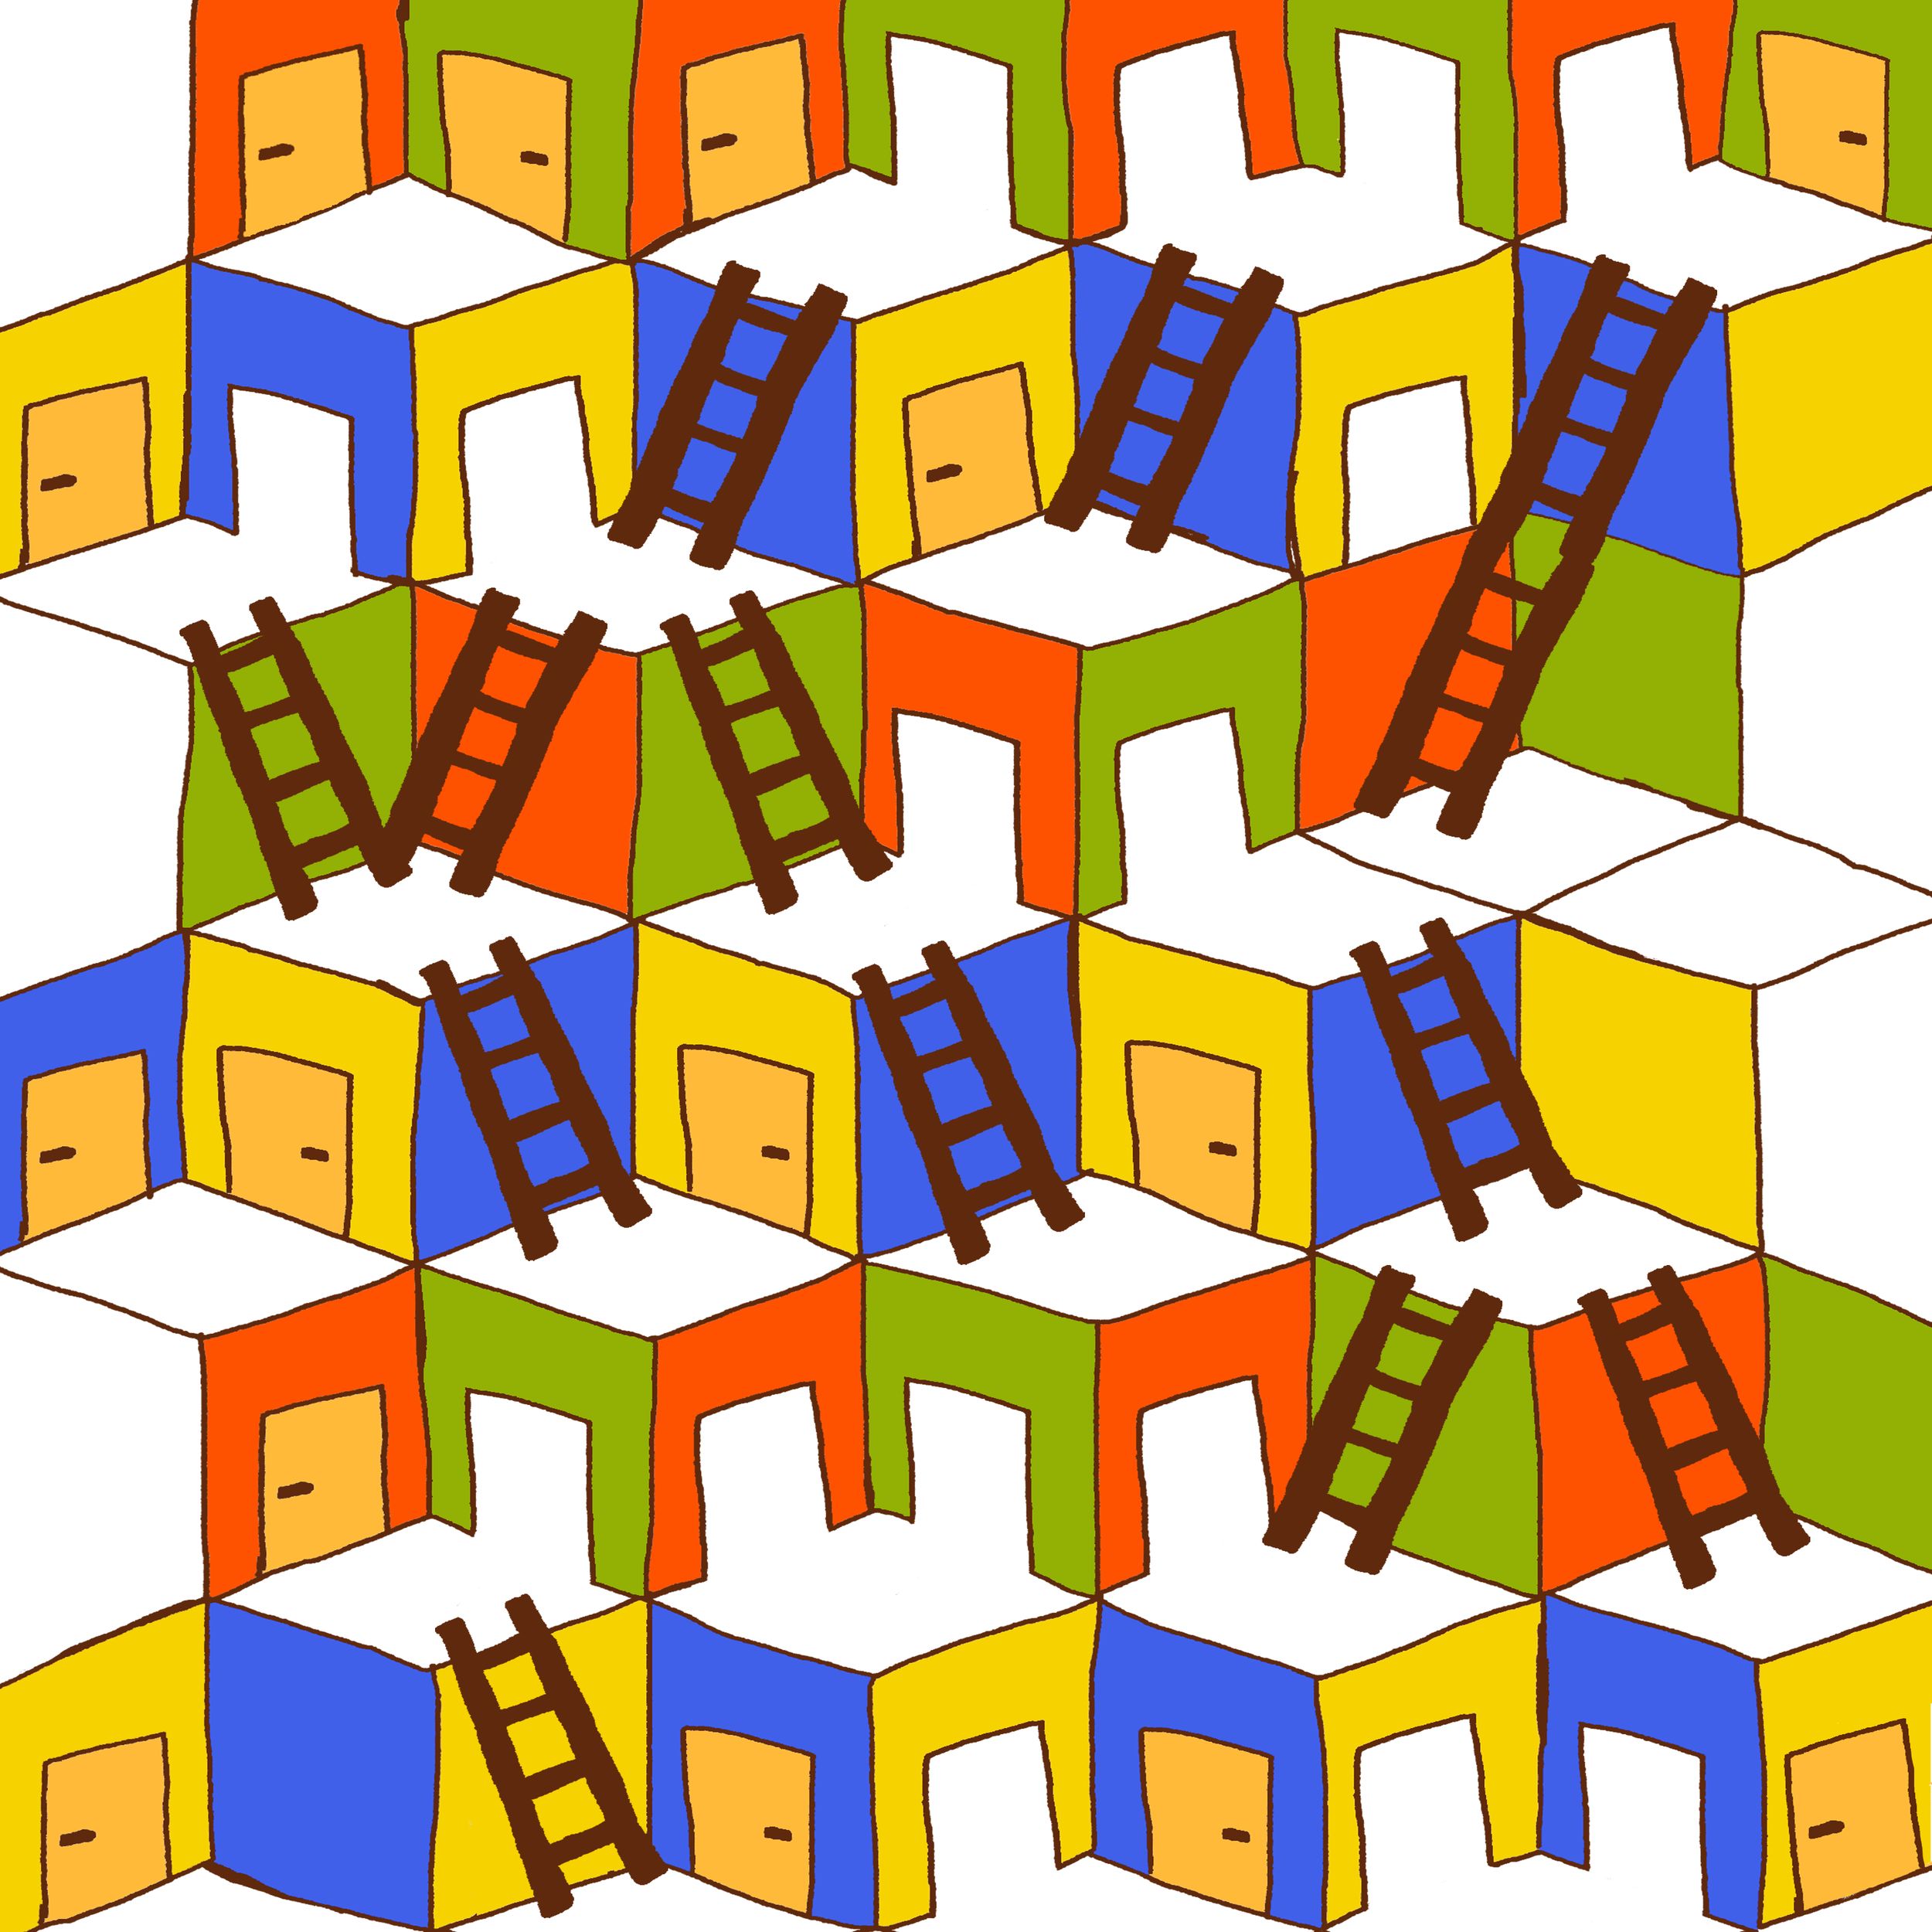 Иллюстрация, сине-желтые и оранжево-зеленые кубики с дверями друг над другом, от нижних к верхним ведут лестницы